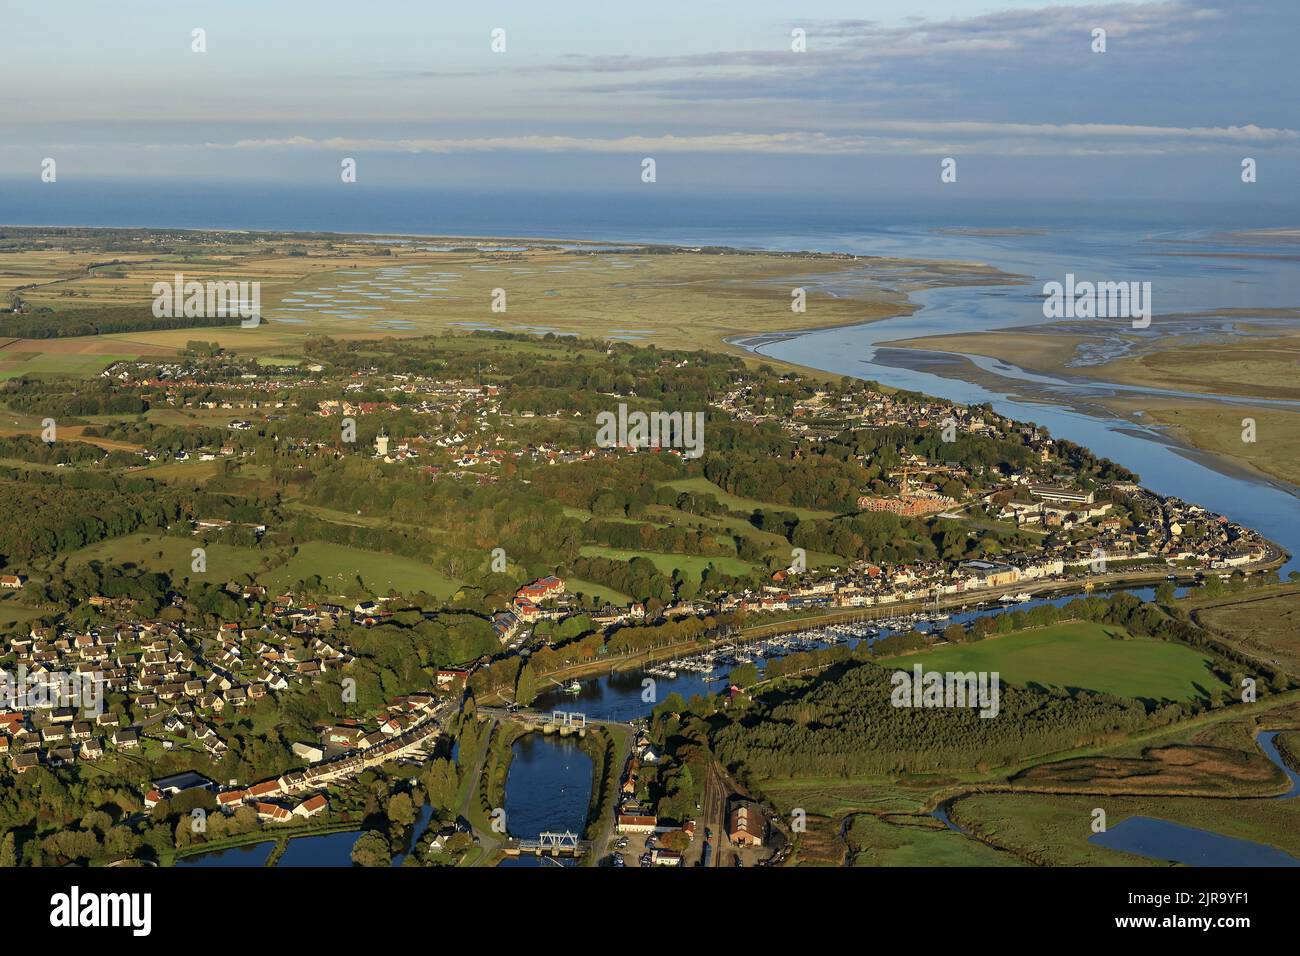 Saint-Valery-sur-Somme (Francia settentrionale): Vista aerea della costa, la città su un promontorio che sovrasta l'estuario della Somme e il porto Foto Stock